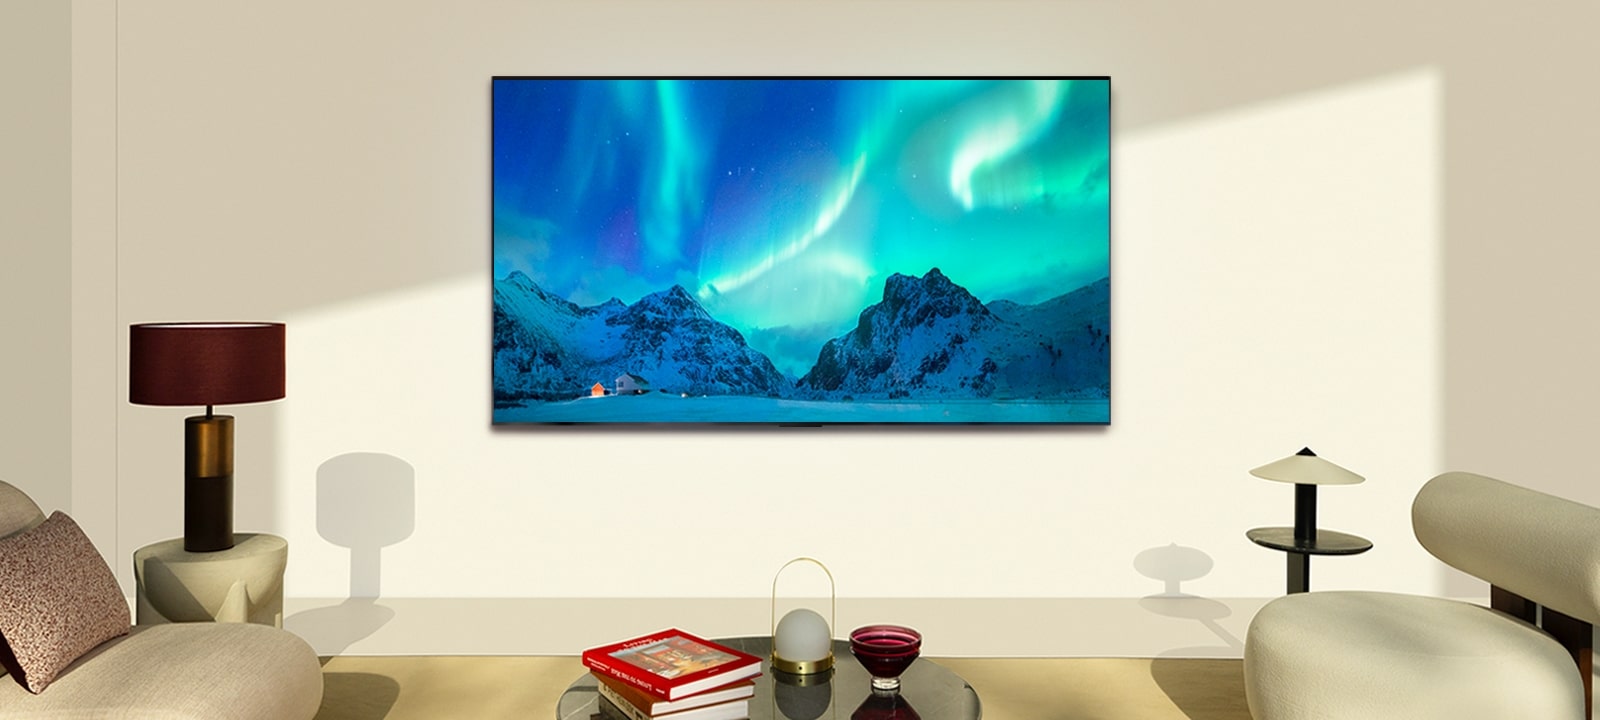 Uma imagem de uma TV OLED e uma soundbar da LG em uma sala de estar moderna durante o dia. A imagem de uma aurora boreal é exibida com os níveis ideais de brilho.